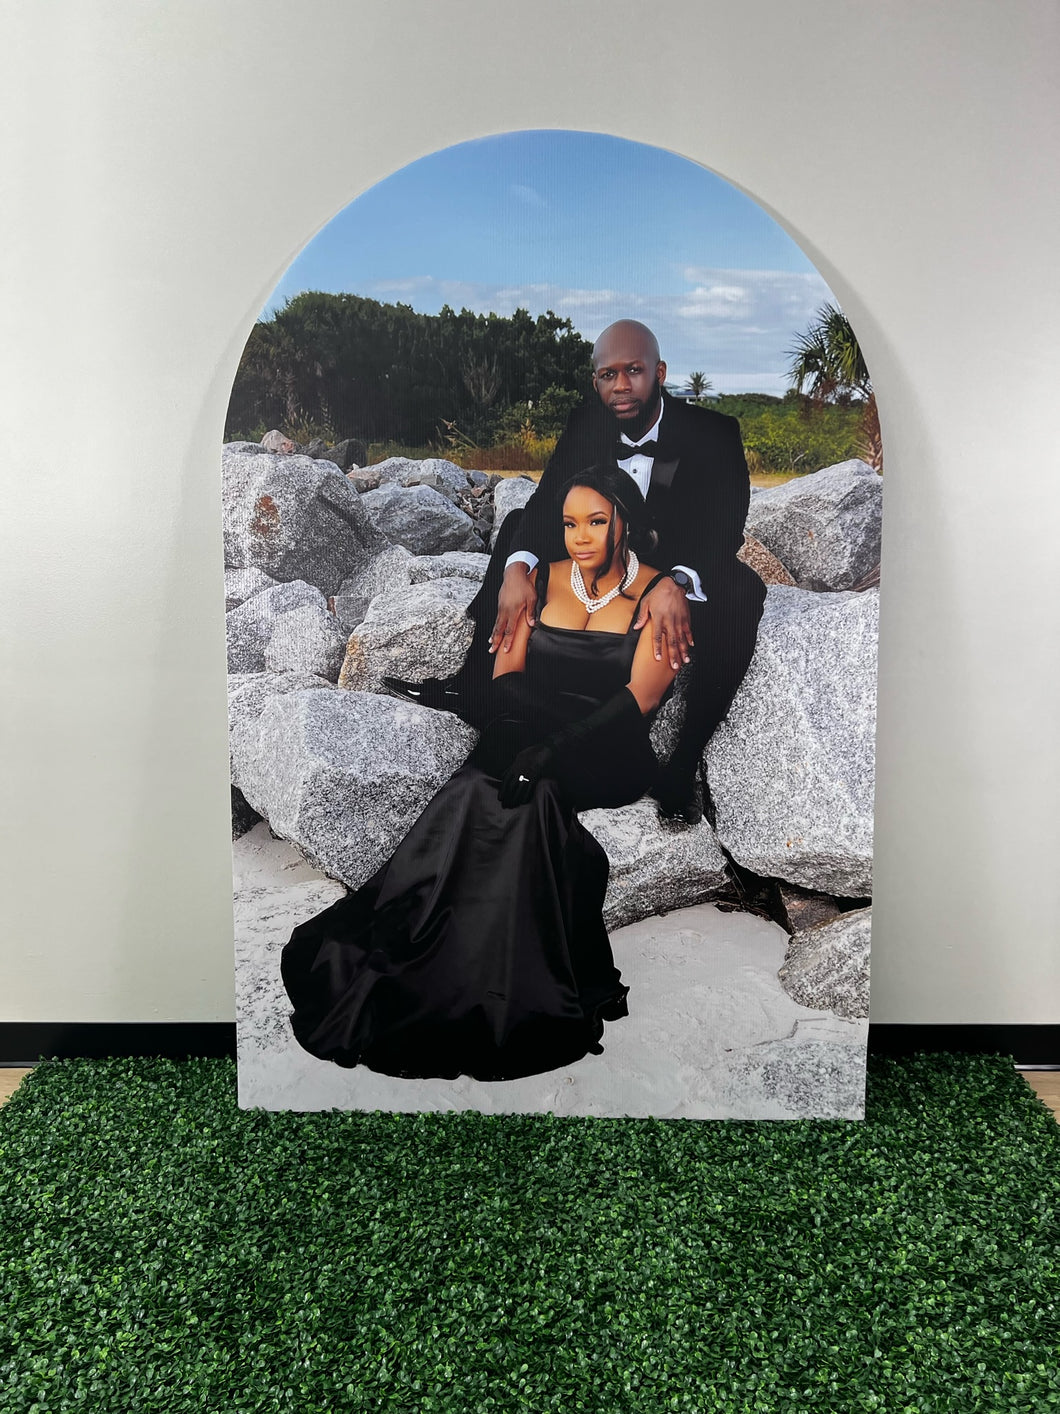 Custom Photo Party Backdrop - Custom Photo Arch - Photo Backdrop - Chiara Wall - Custom Wedding Backdrop - Wedding Photo Backdrop